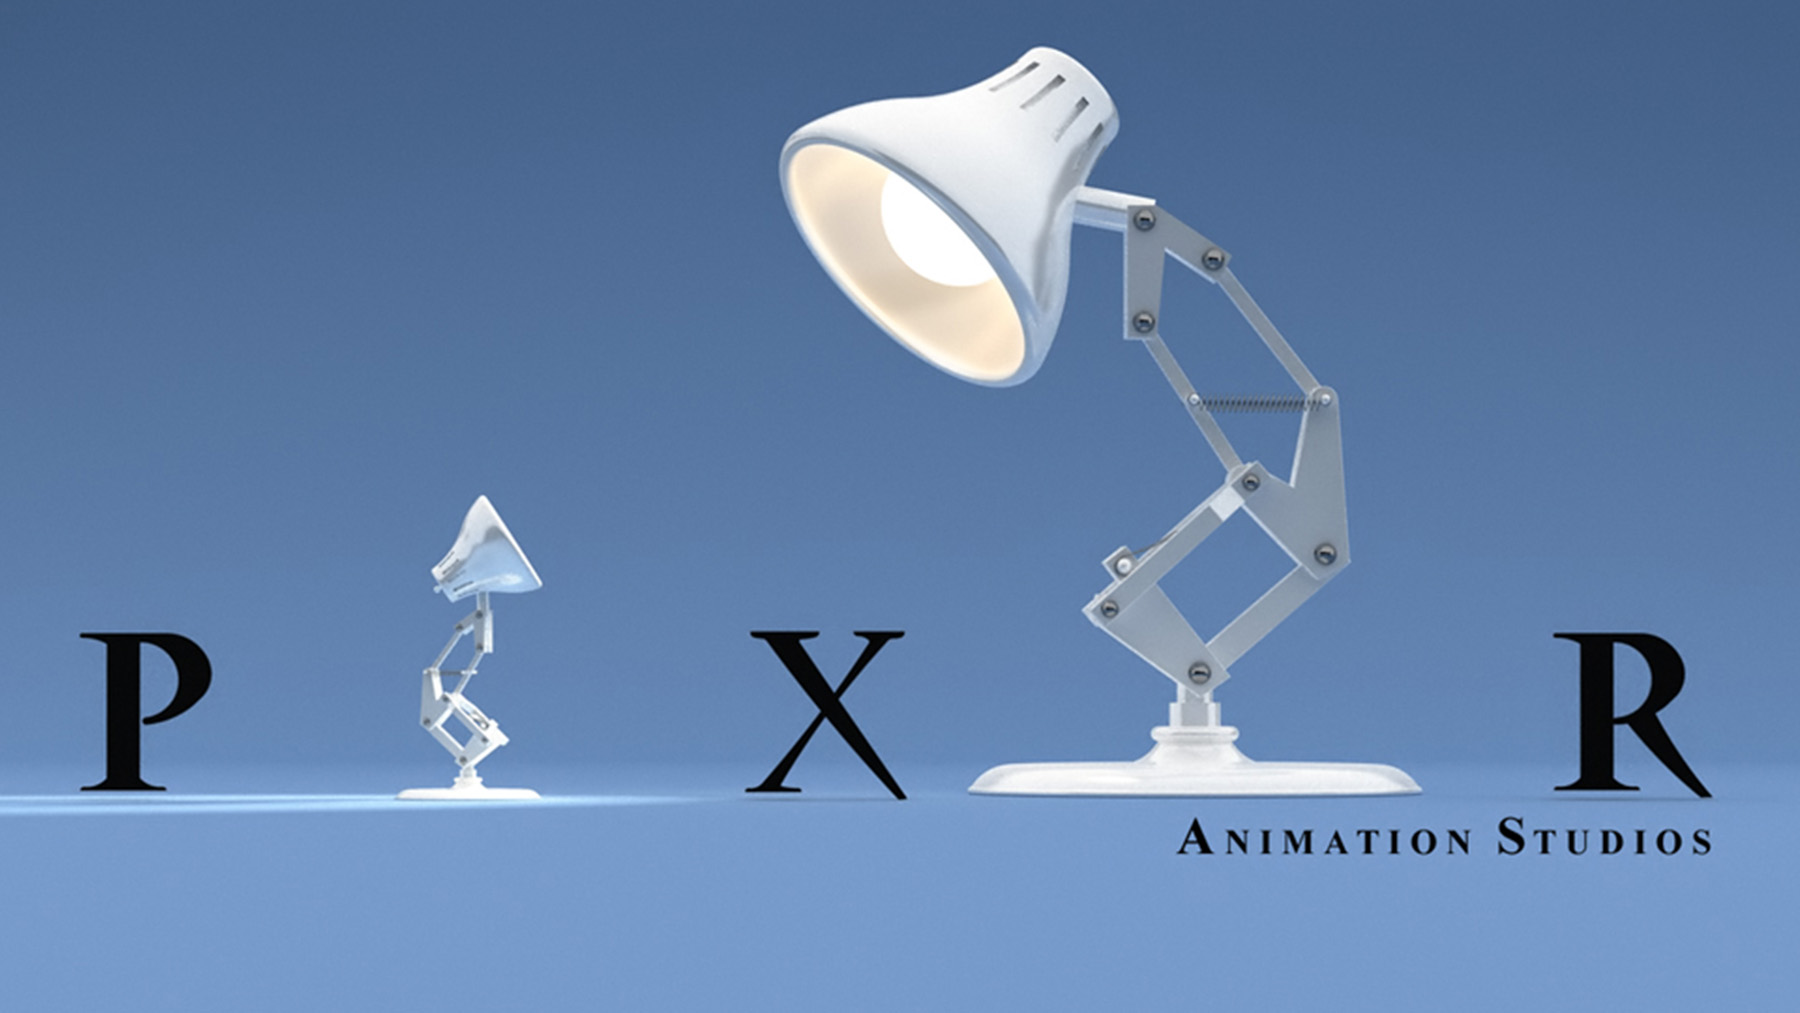 La crisis creativa de Pixar: ¿Ha perdido frescura el sello de animación?